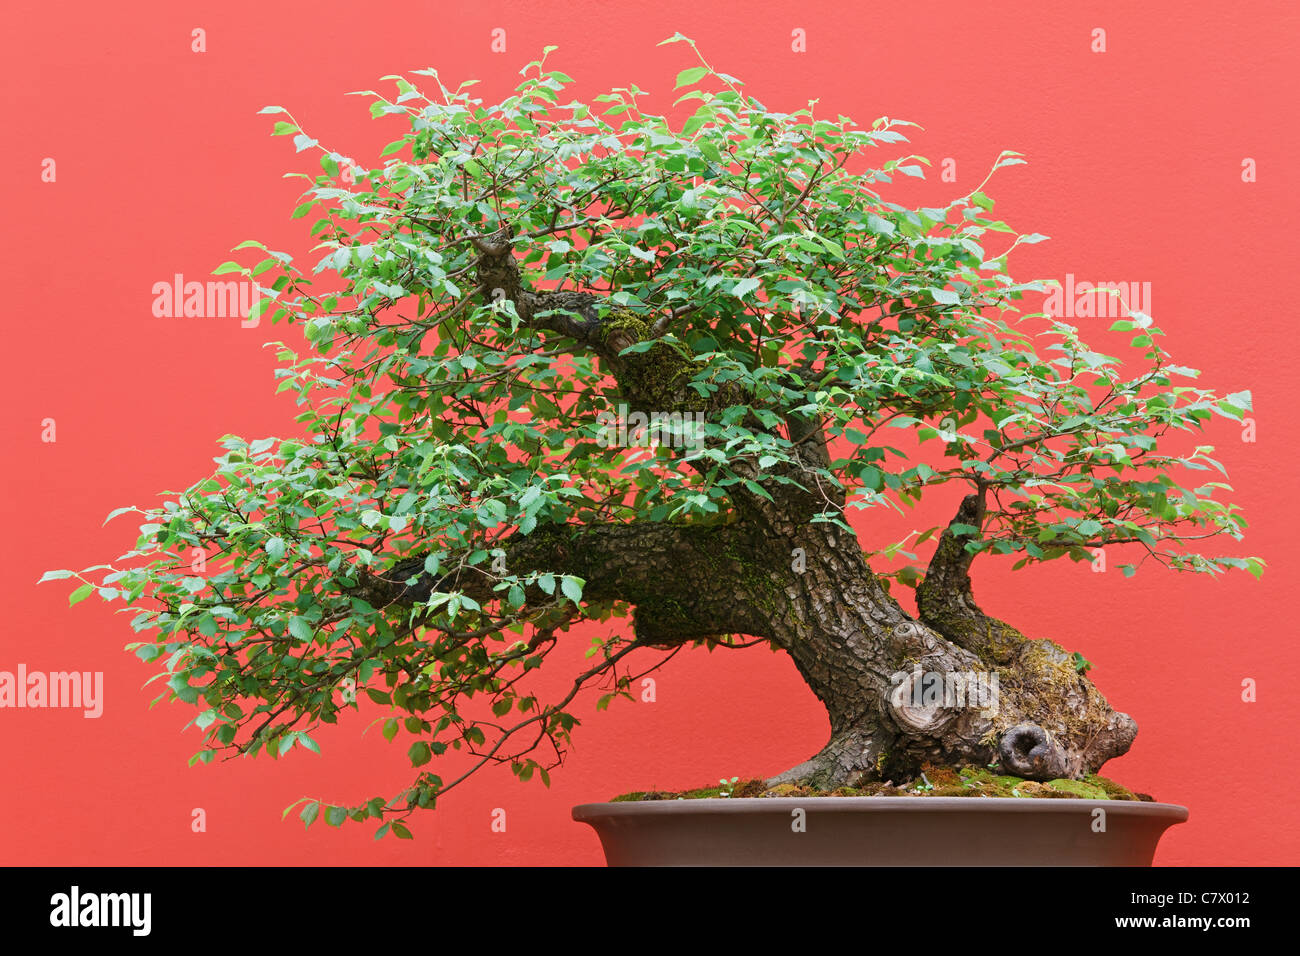 Zelkova magnifique bonsai sur fond rouge Banque D'Images